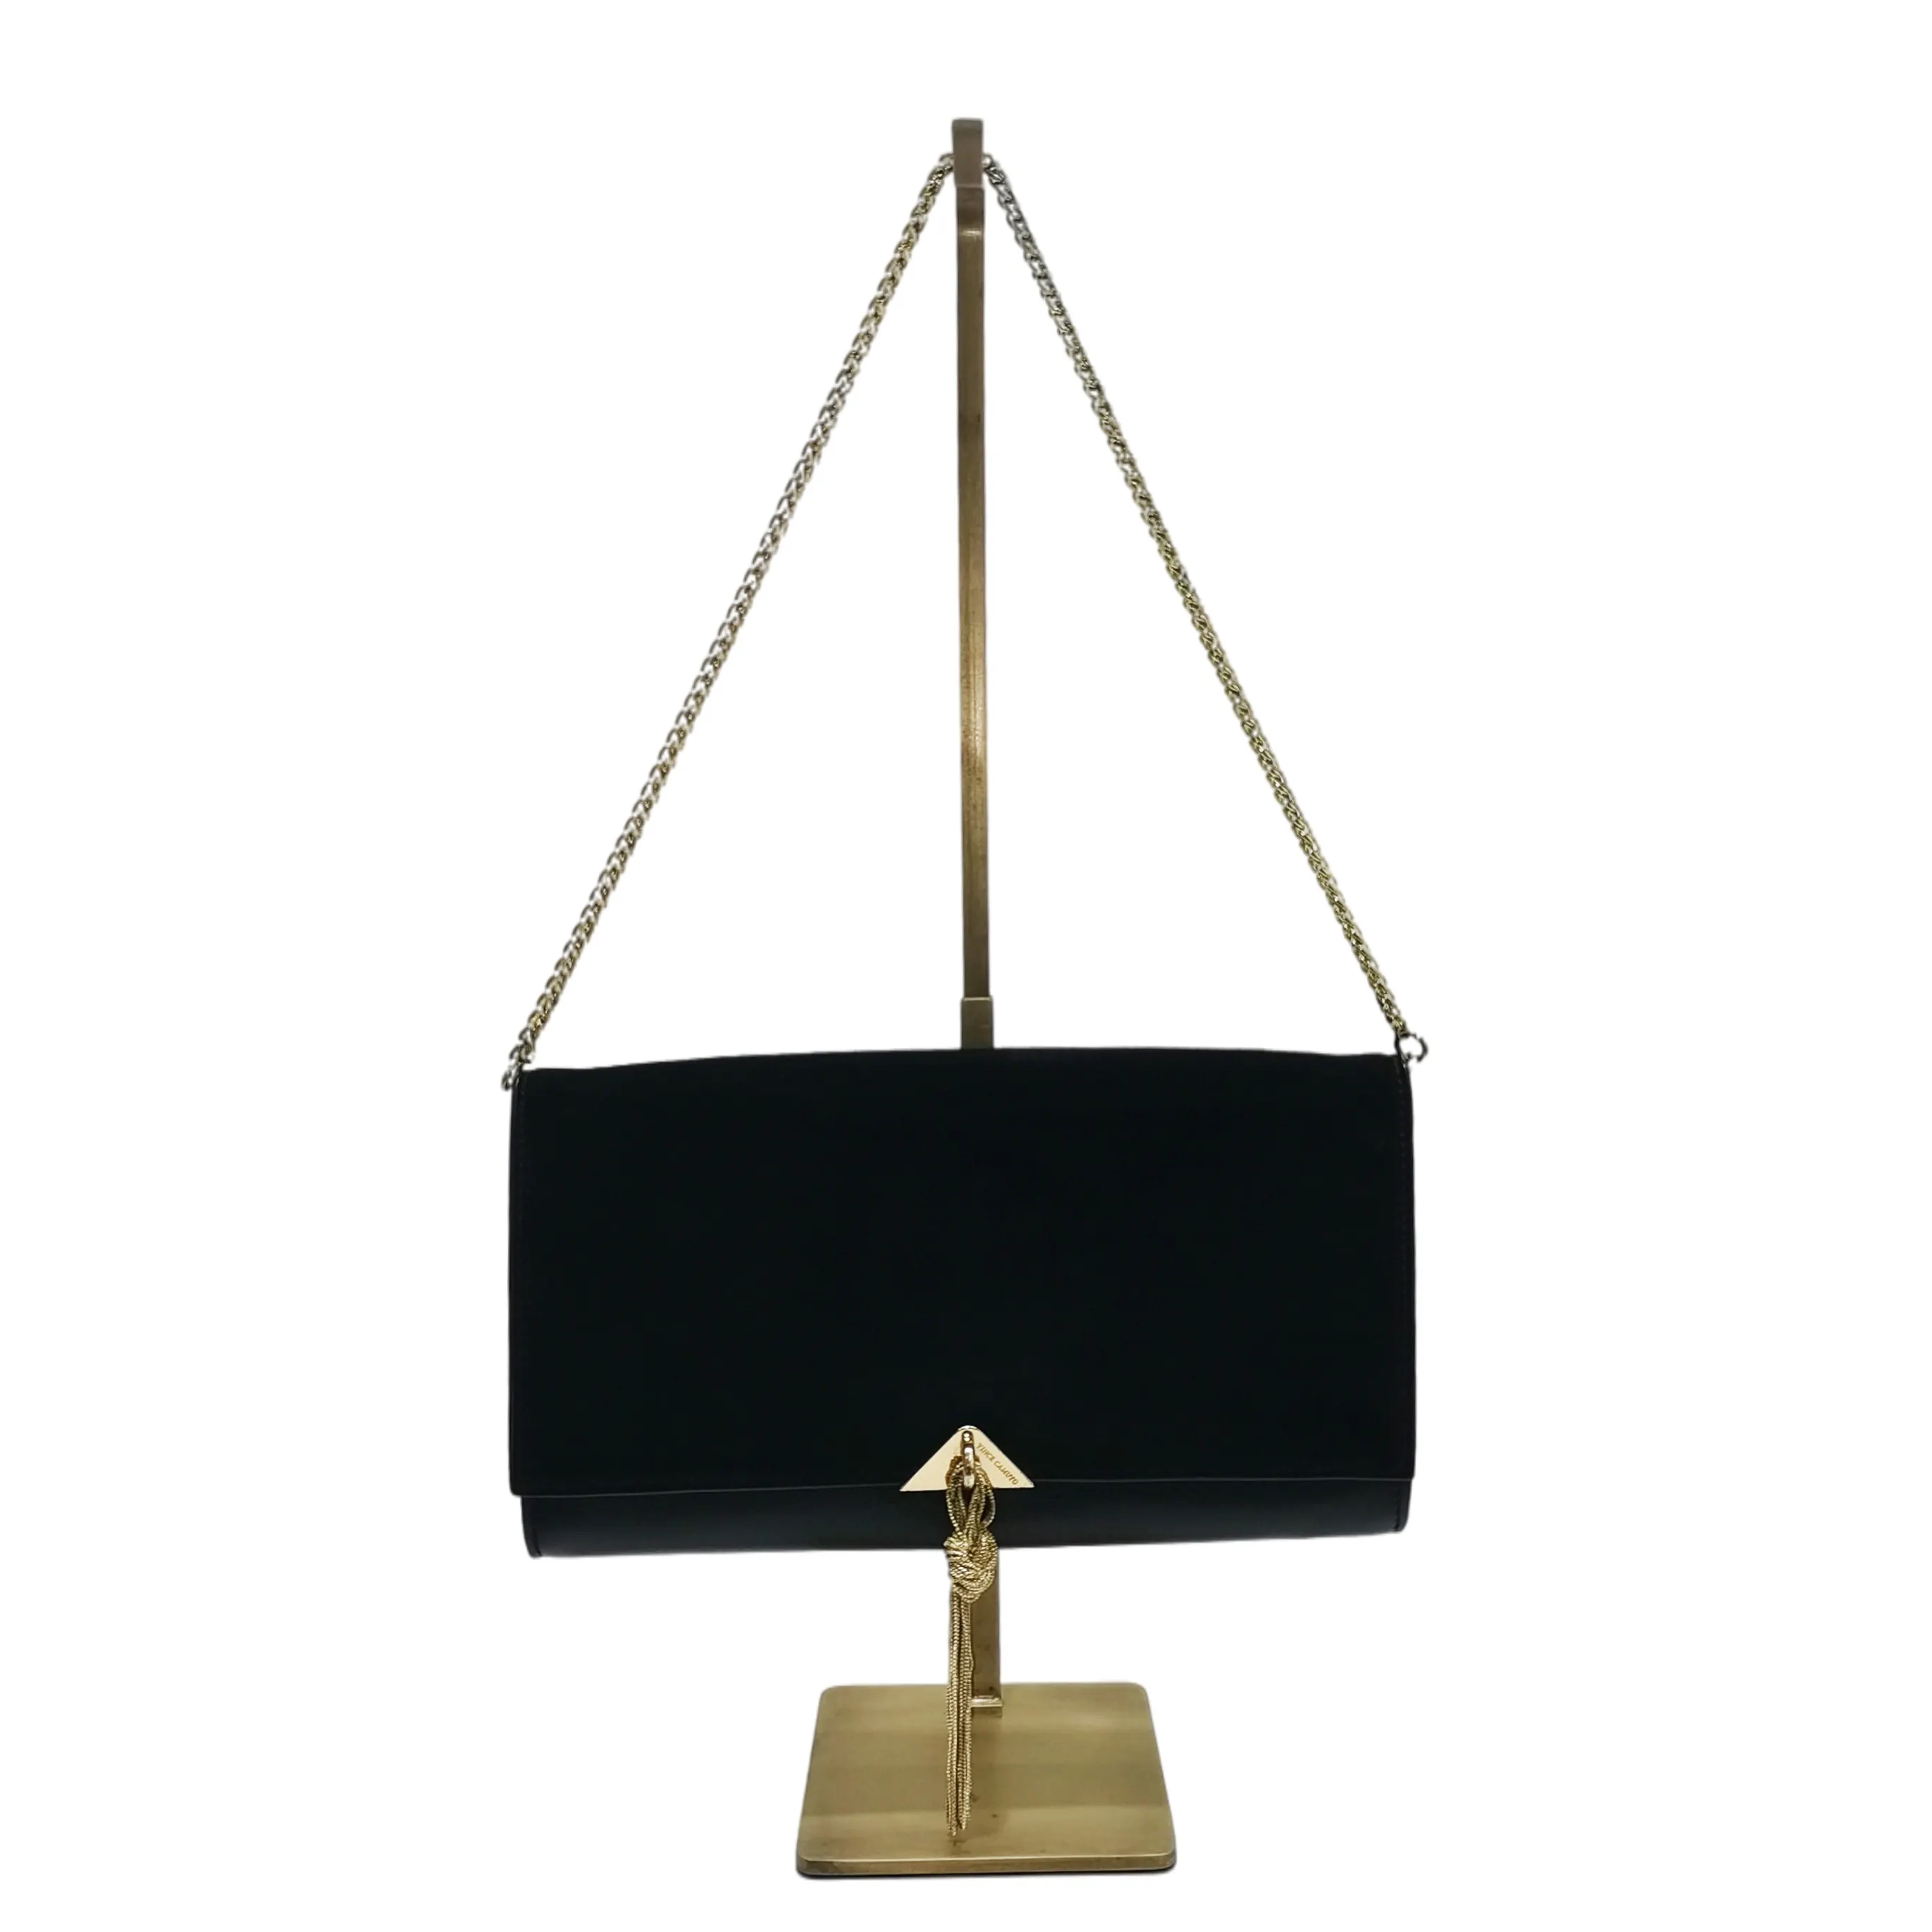 Hot Custom S Shape Design Metal Handbag Rack Display Stand Adjustable Height Gold Bag Holder Boutique Store Visual Props sale